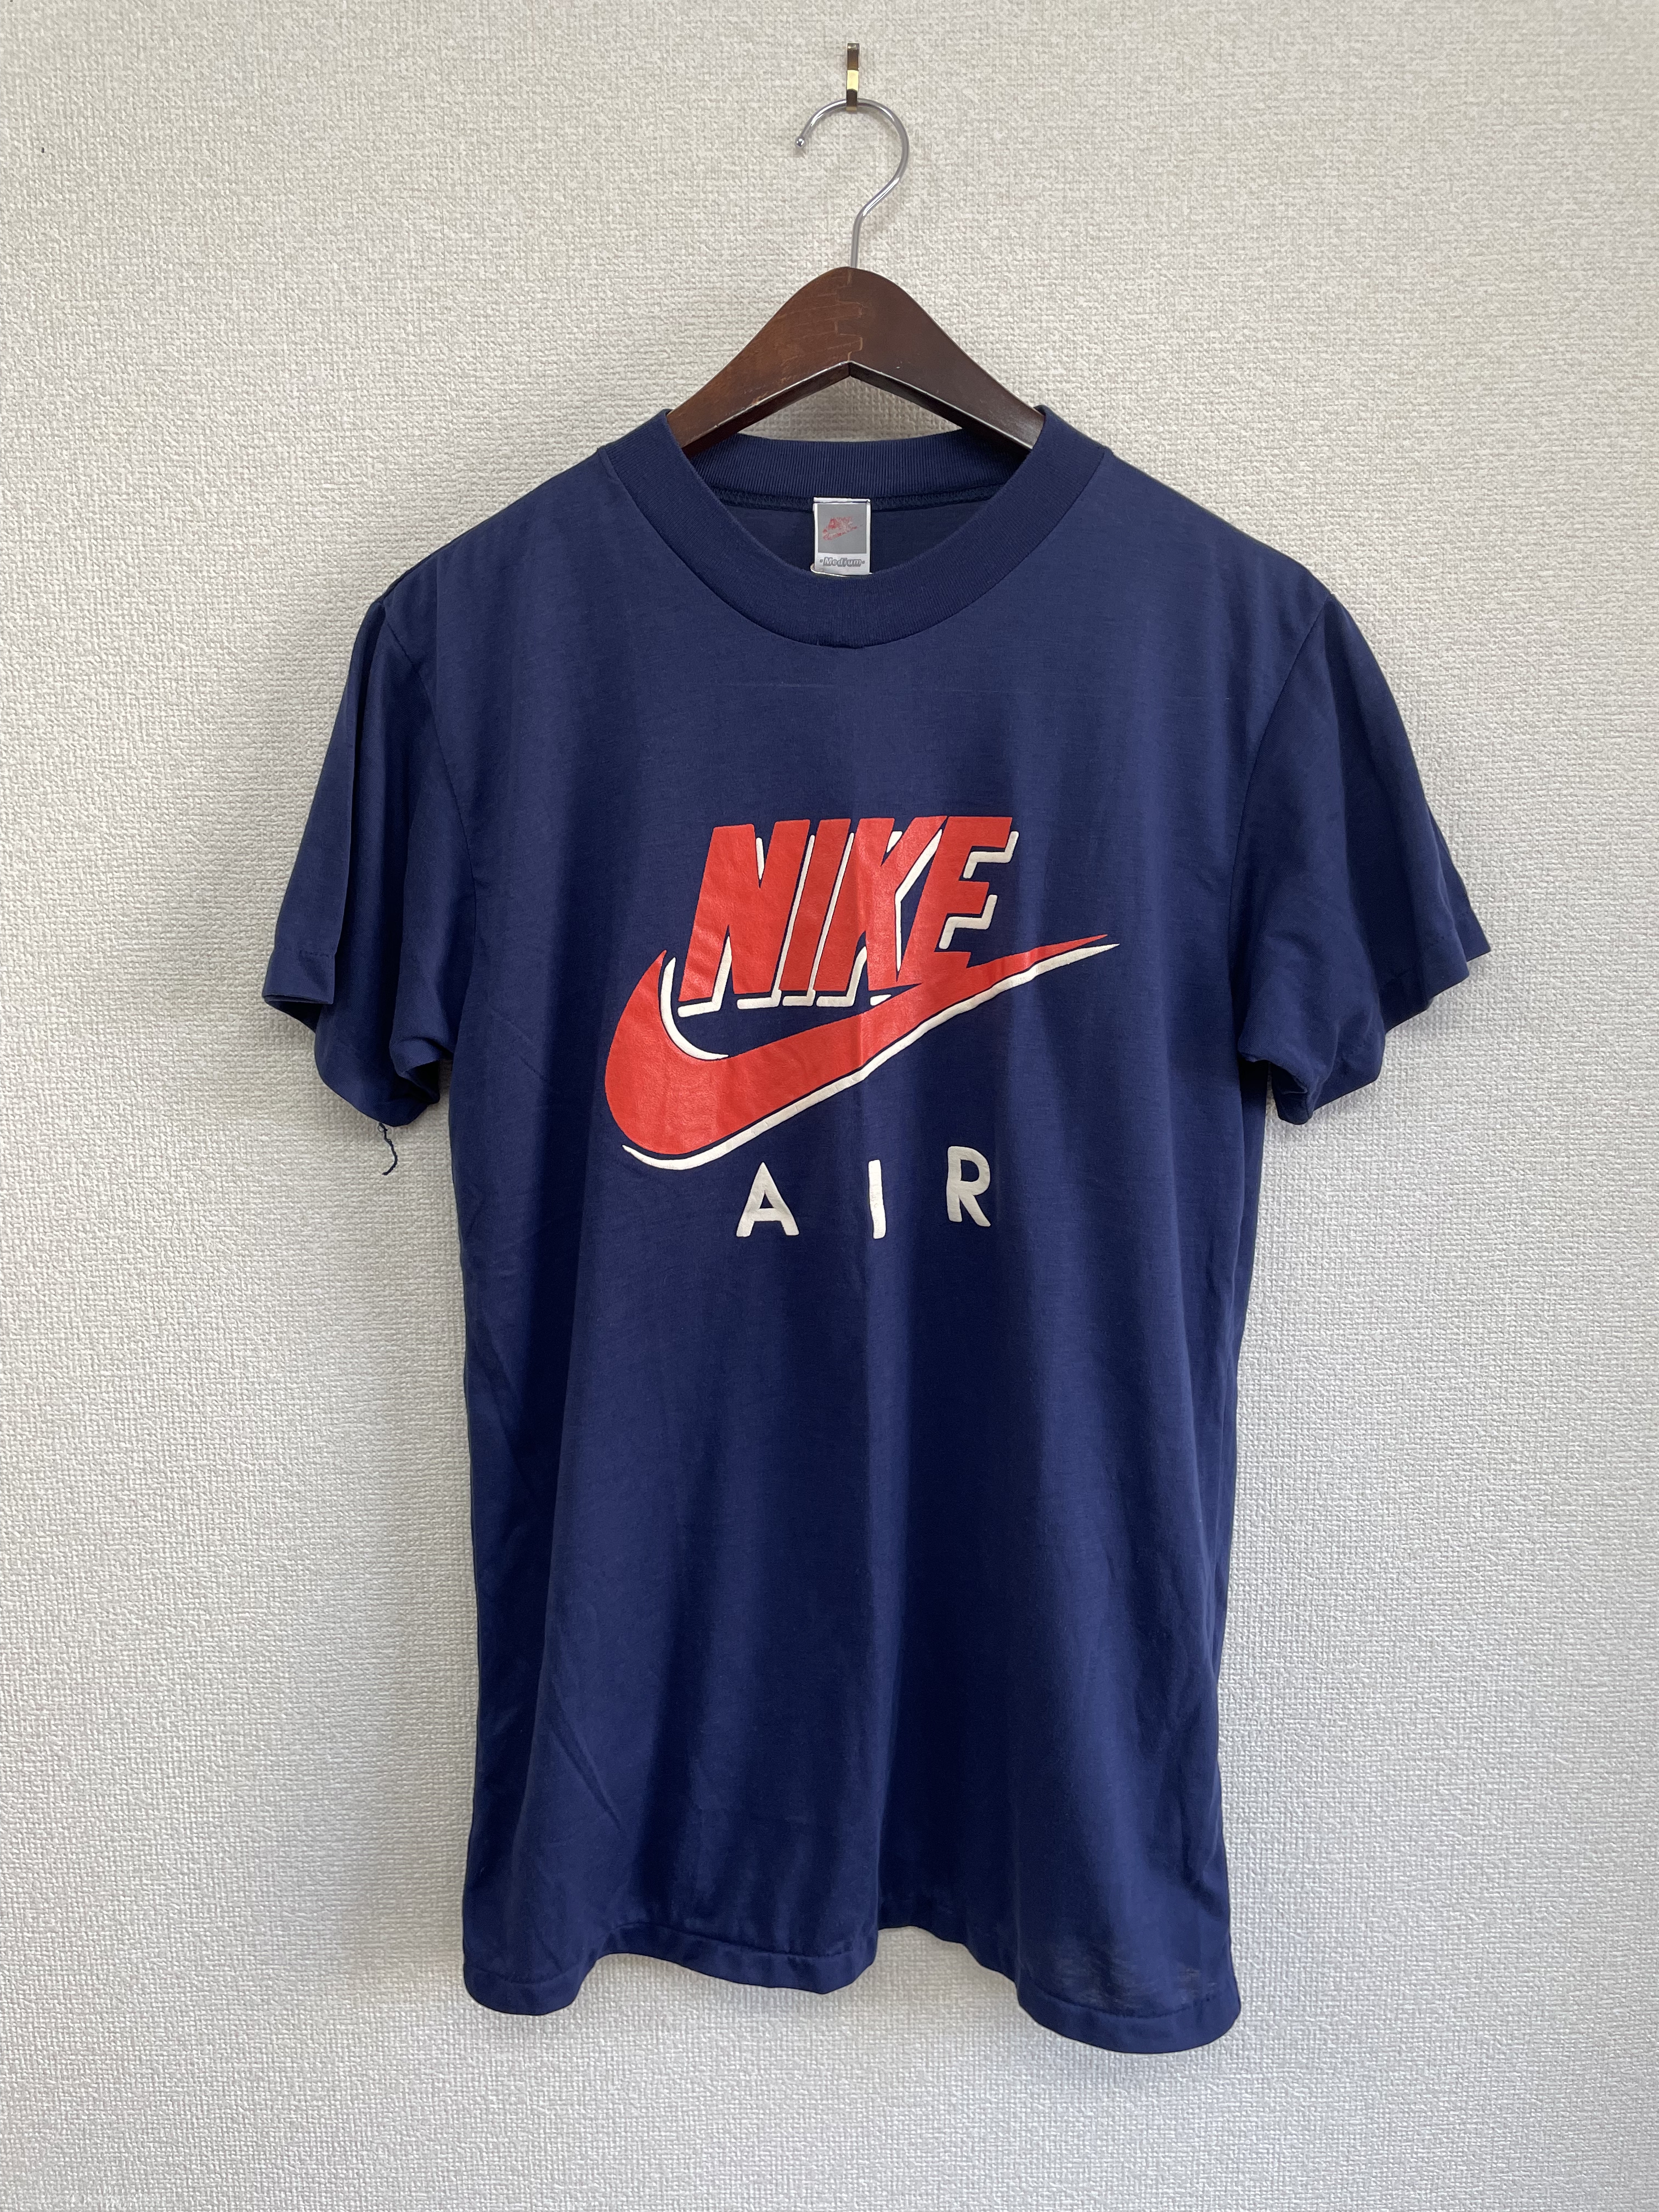 80's 韓国製 ナイキジャパン ビンテージ ナイキ エア Tシャツ NIKE